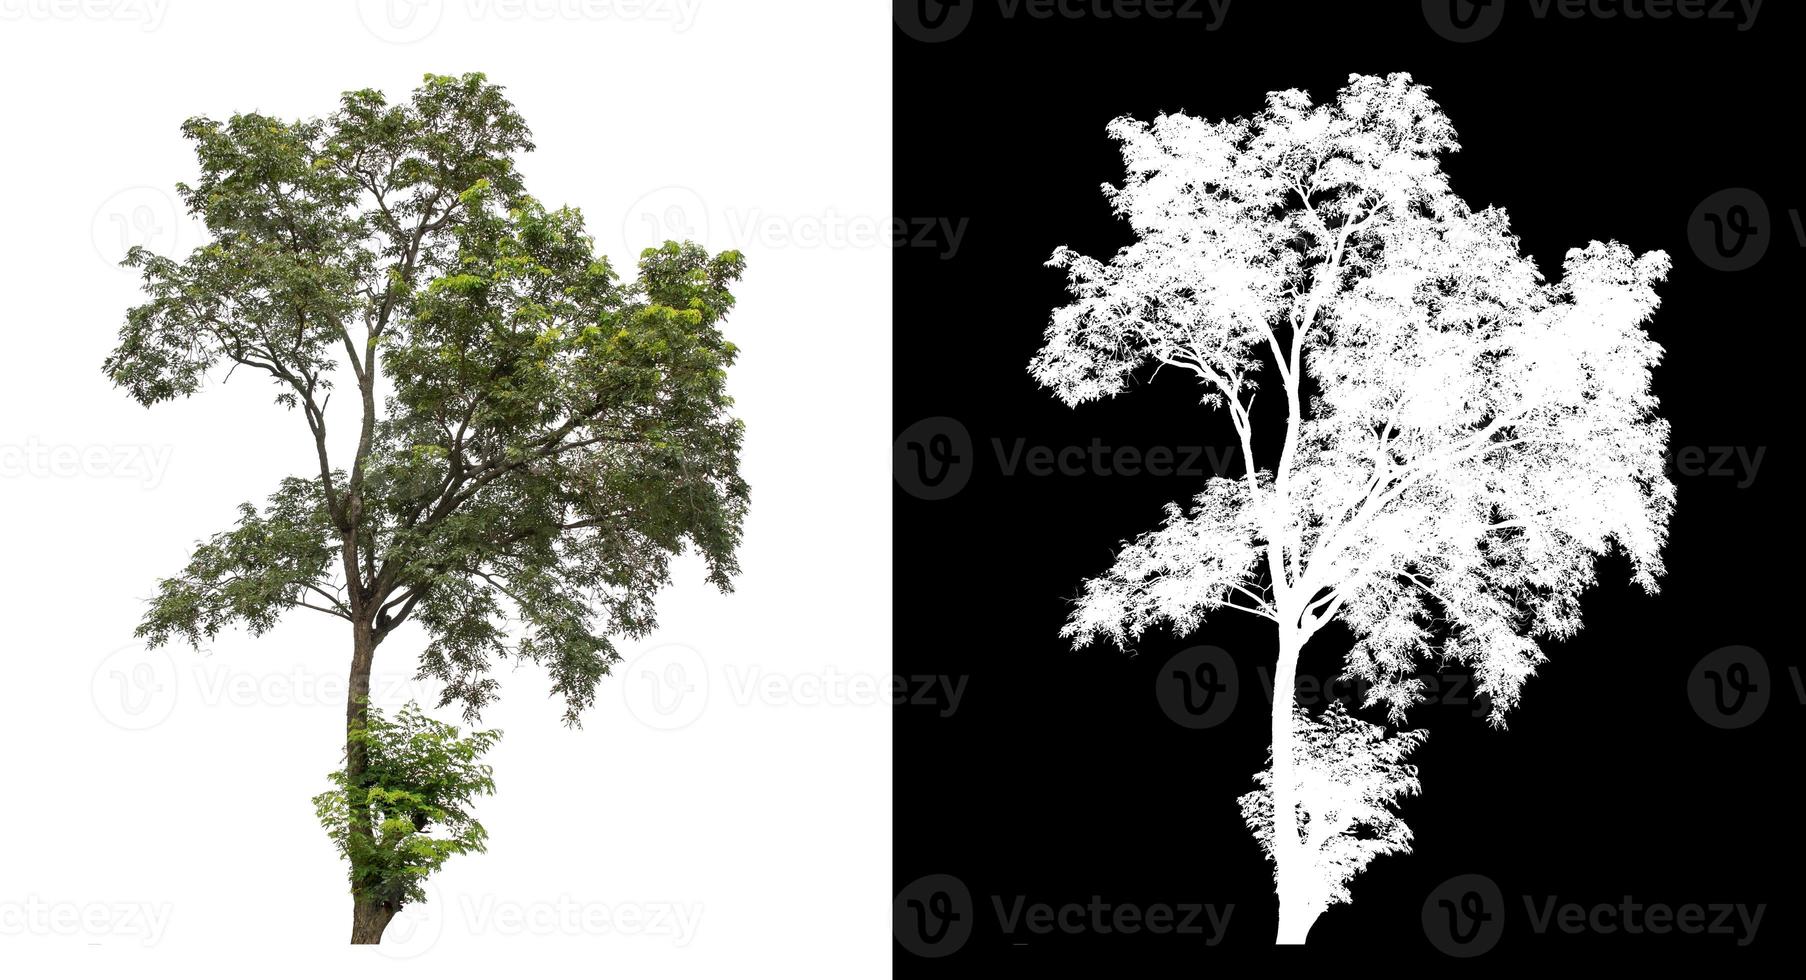 árvore no fundo branco da imagem com traçado de recorte, única árvore com traçado de recorte e canal alfa em fundo preto foto